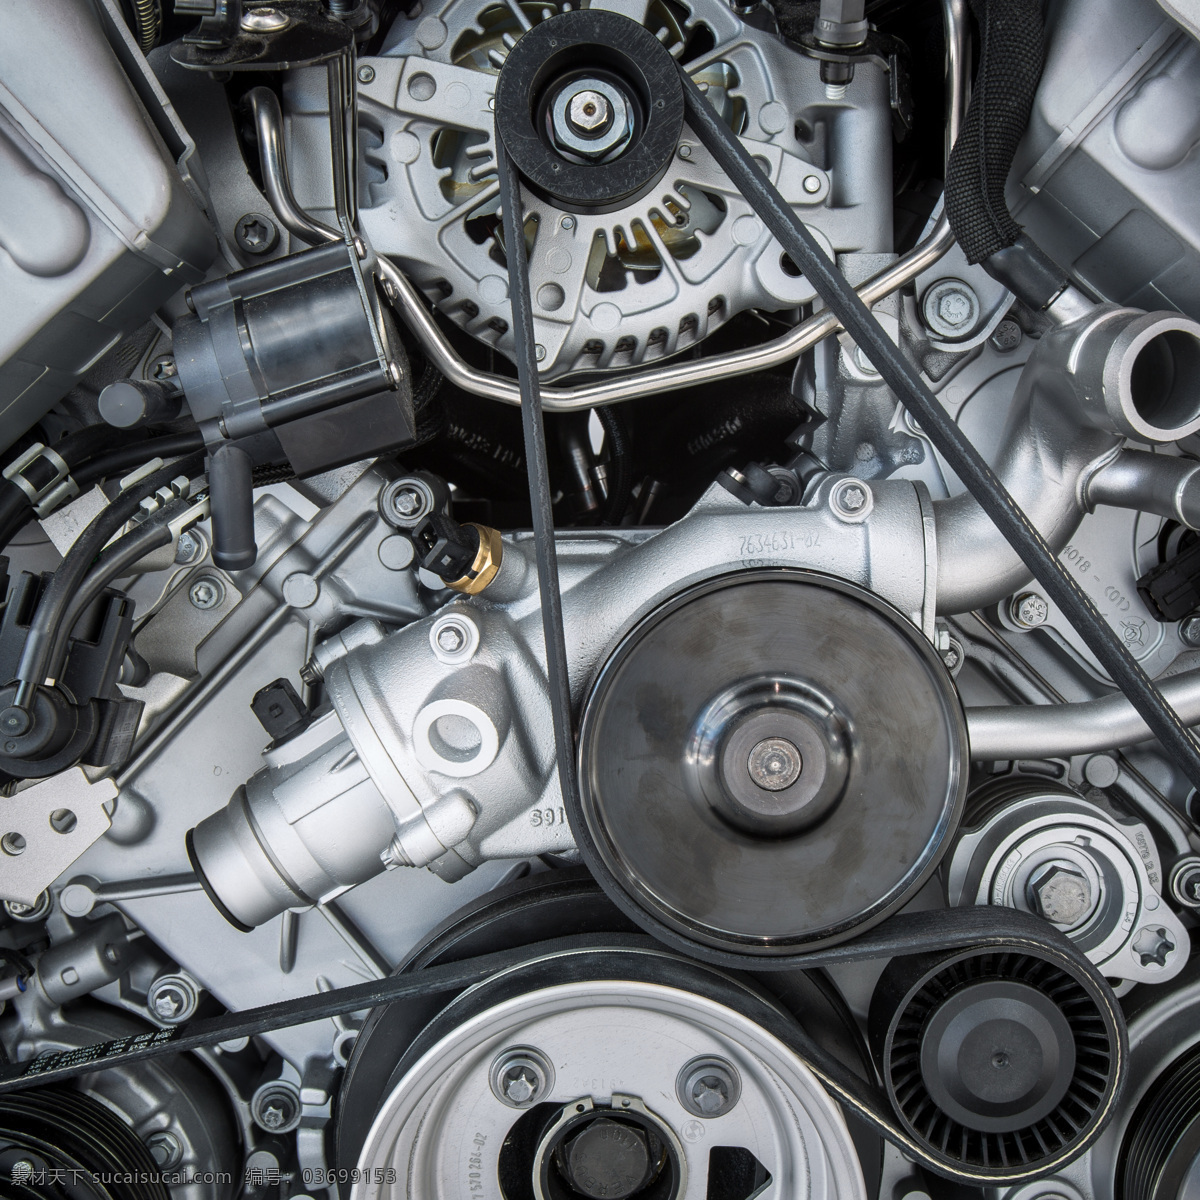 发动机 引擎 齿轮 金属 汽车 机械 零件 汽车部件 动力 科技 工业科技 交通工具 现代科技 工业生产